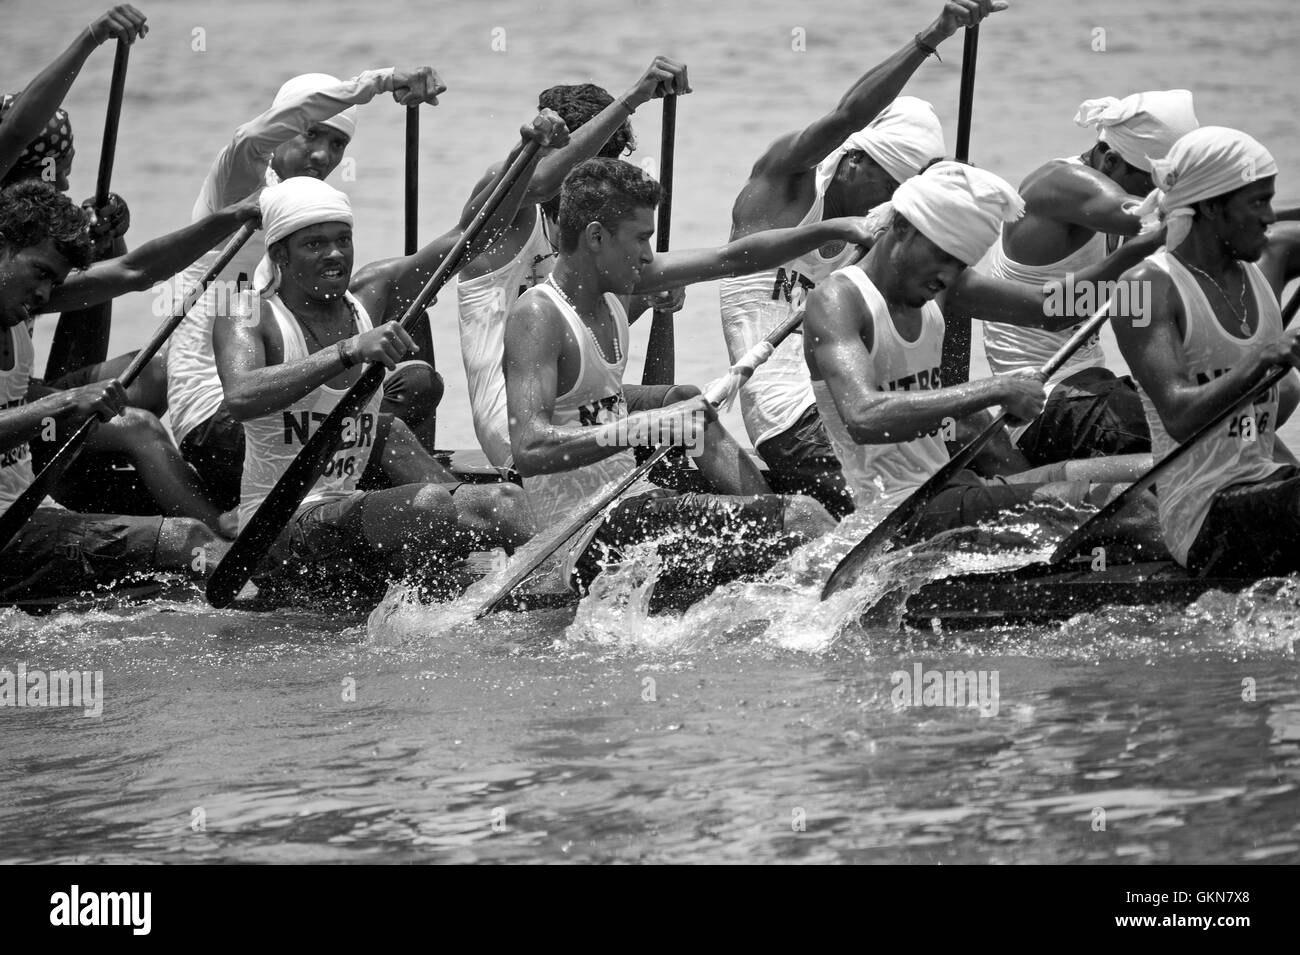 L'image du participant, l'aviron, Snake bateau , bateau de Nehru, le jour de la course, Allaepy Punnamda Lake, le Kerala Inde Banque D'Images